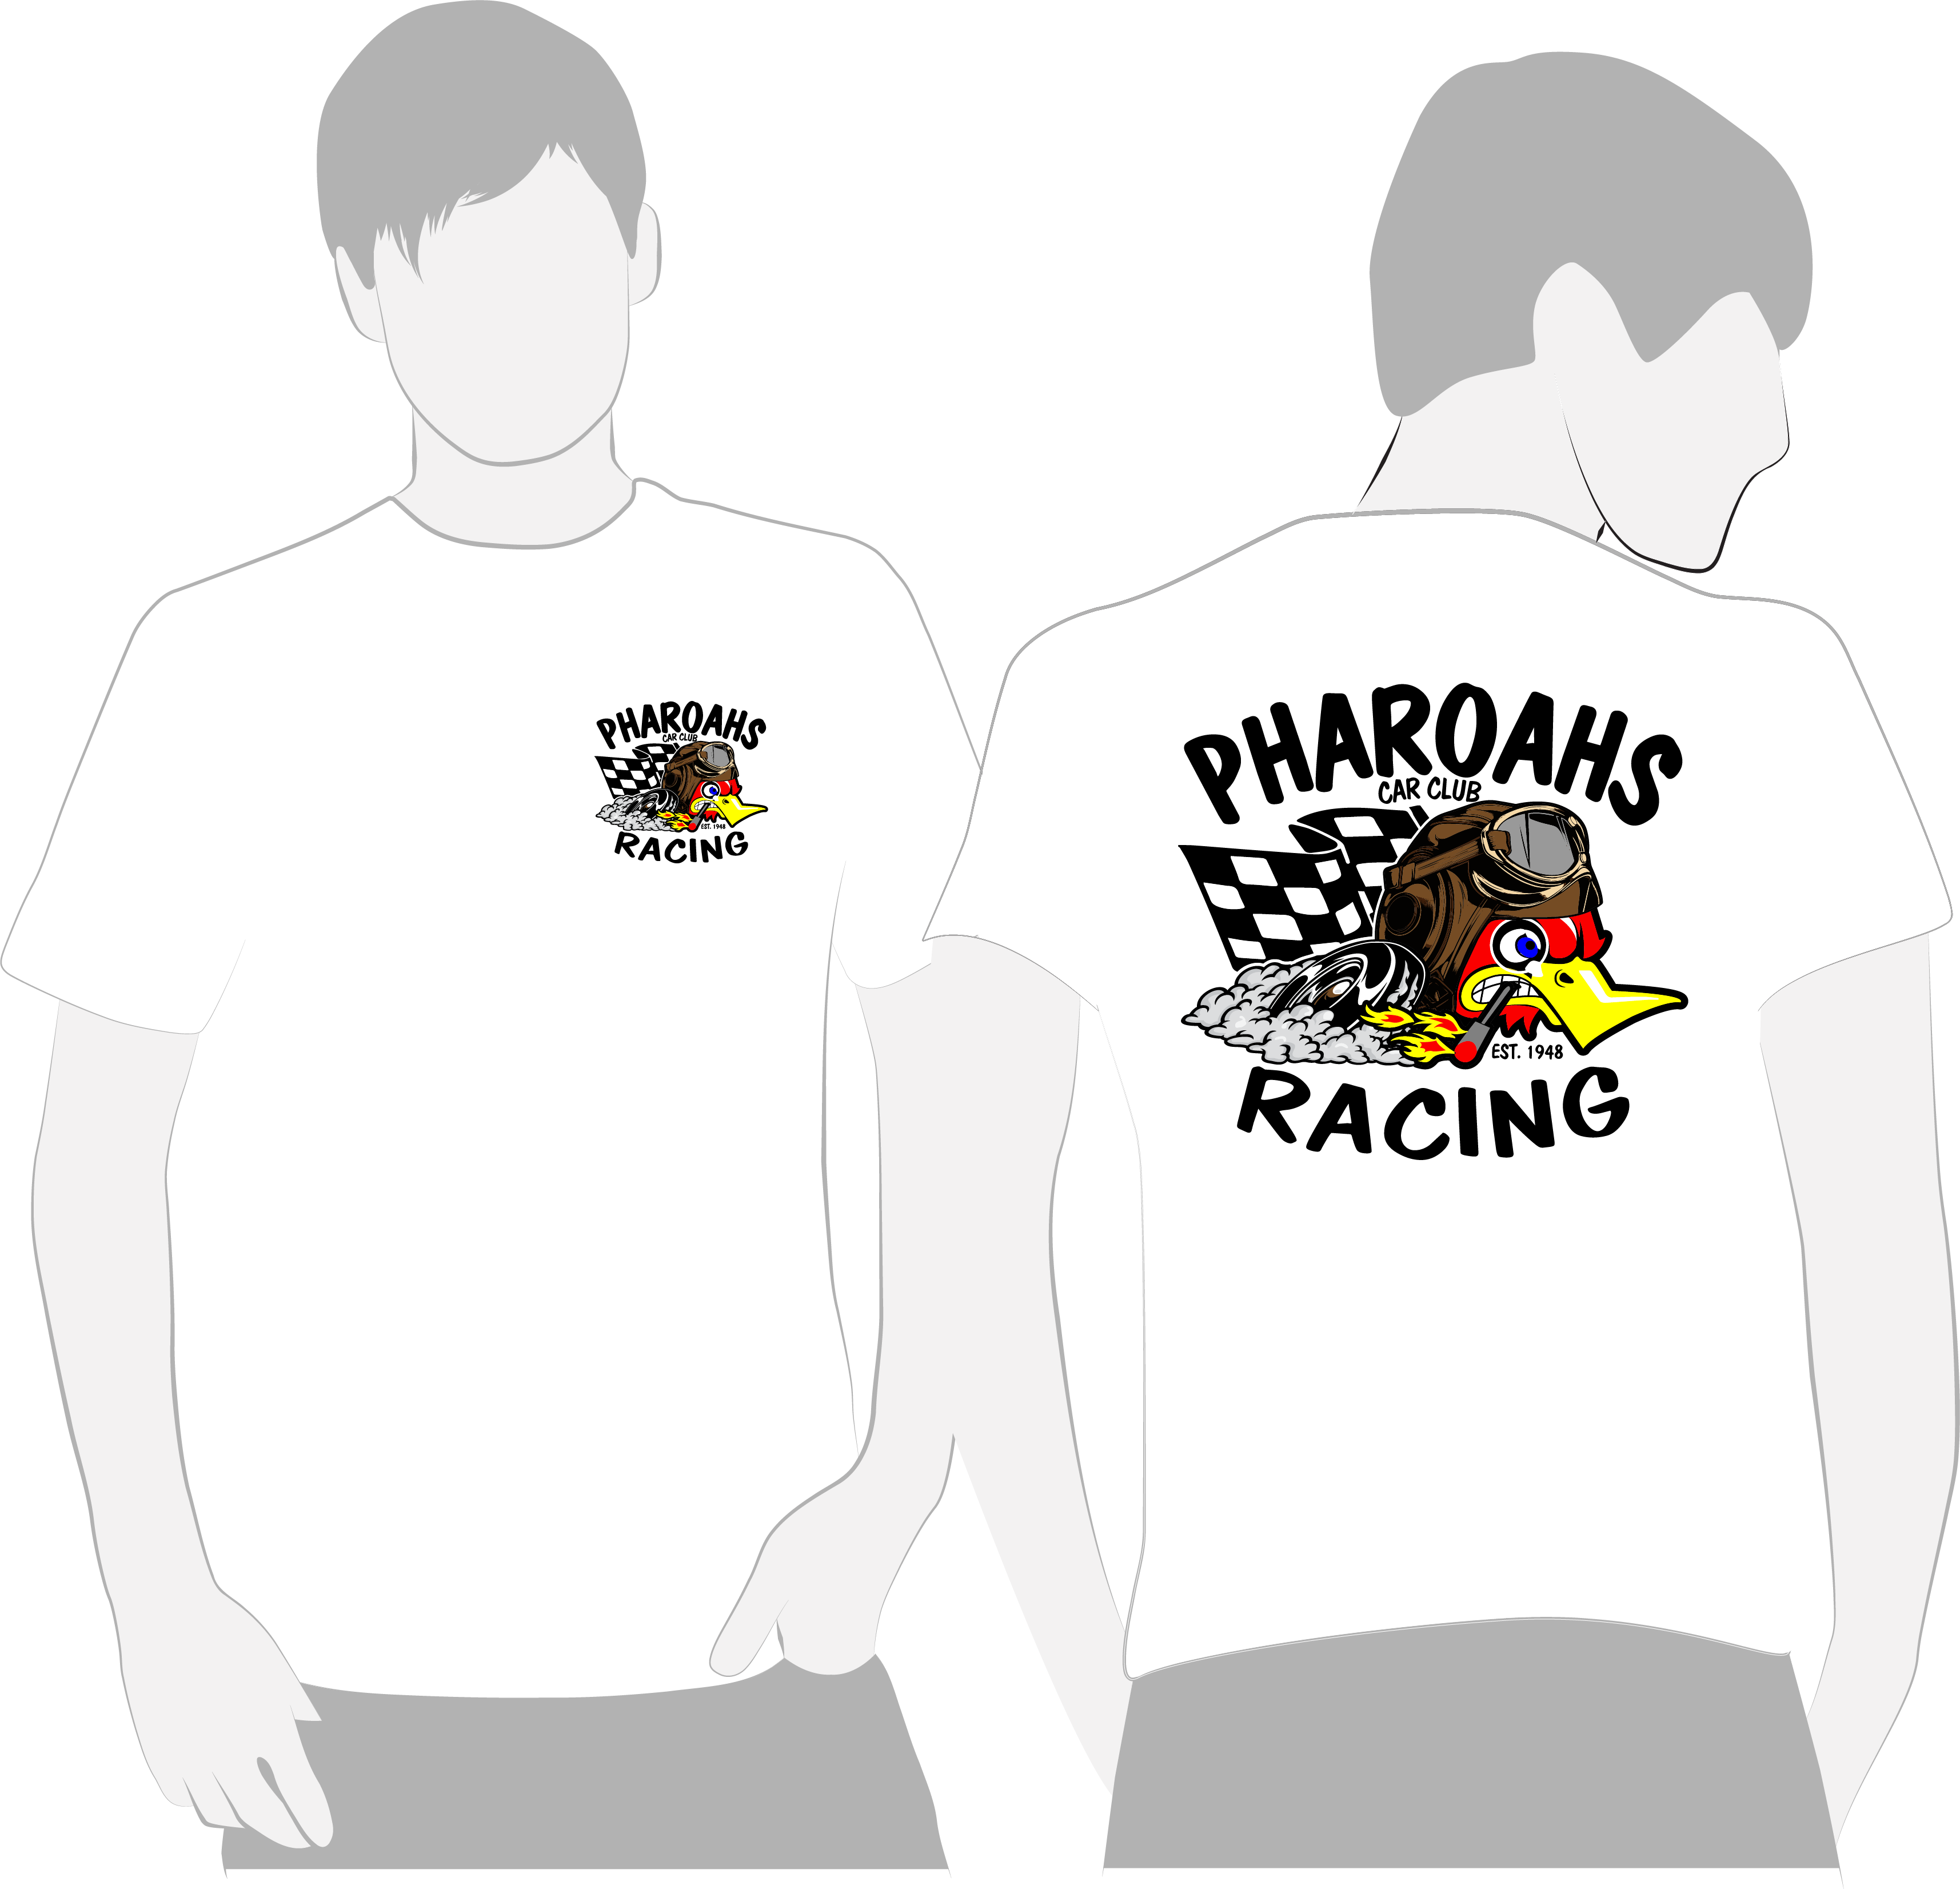 Pharoahs Racing Tee (White)